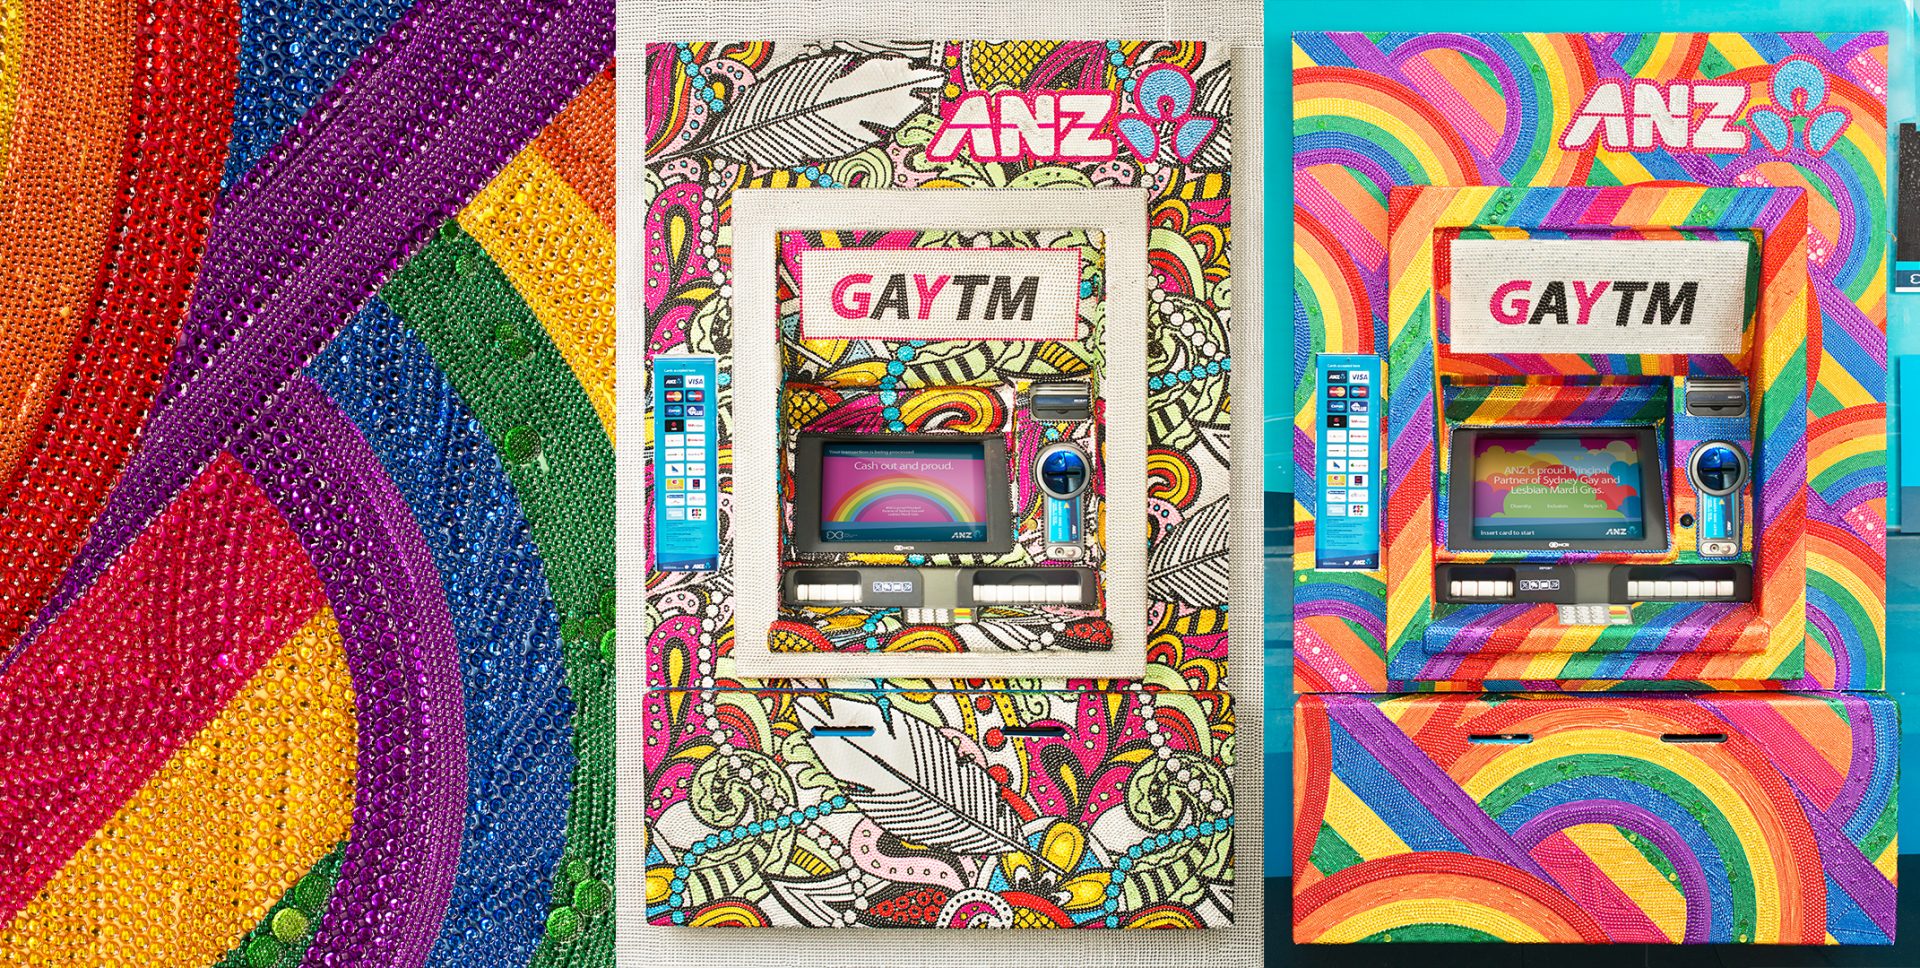 ANZ GAYTM Mardi Gras Rainbow Pride by The Glue Society